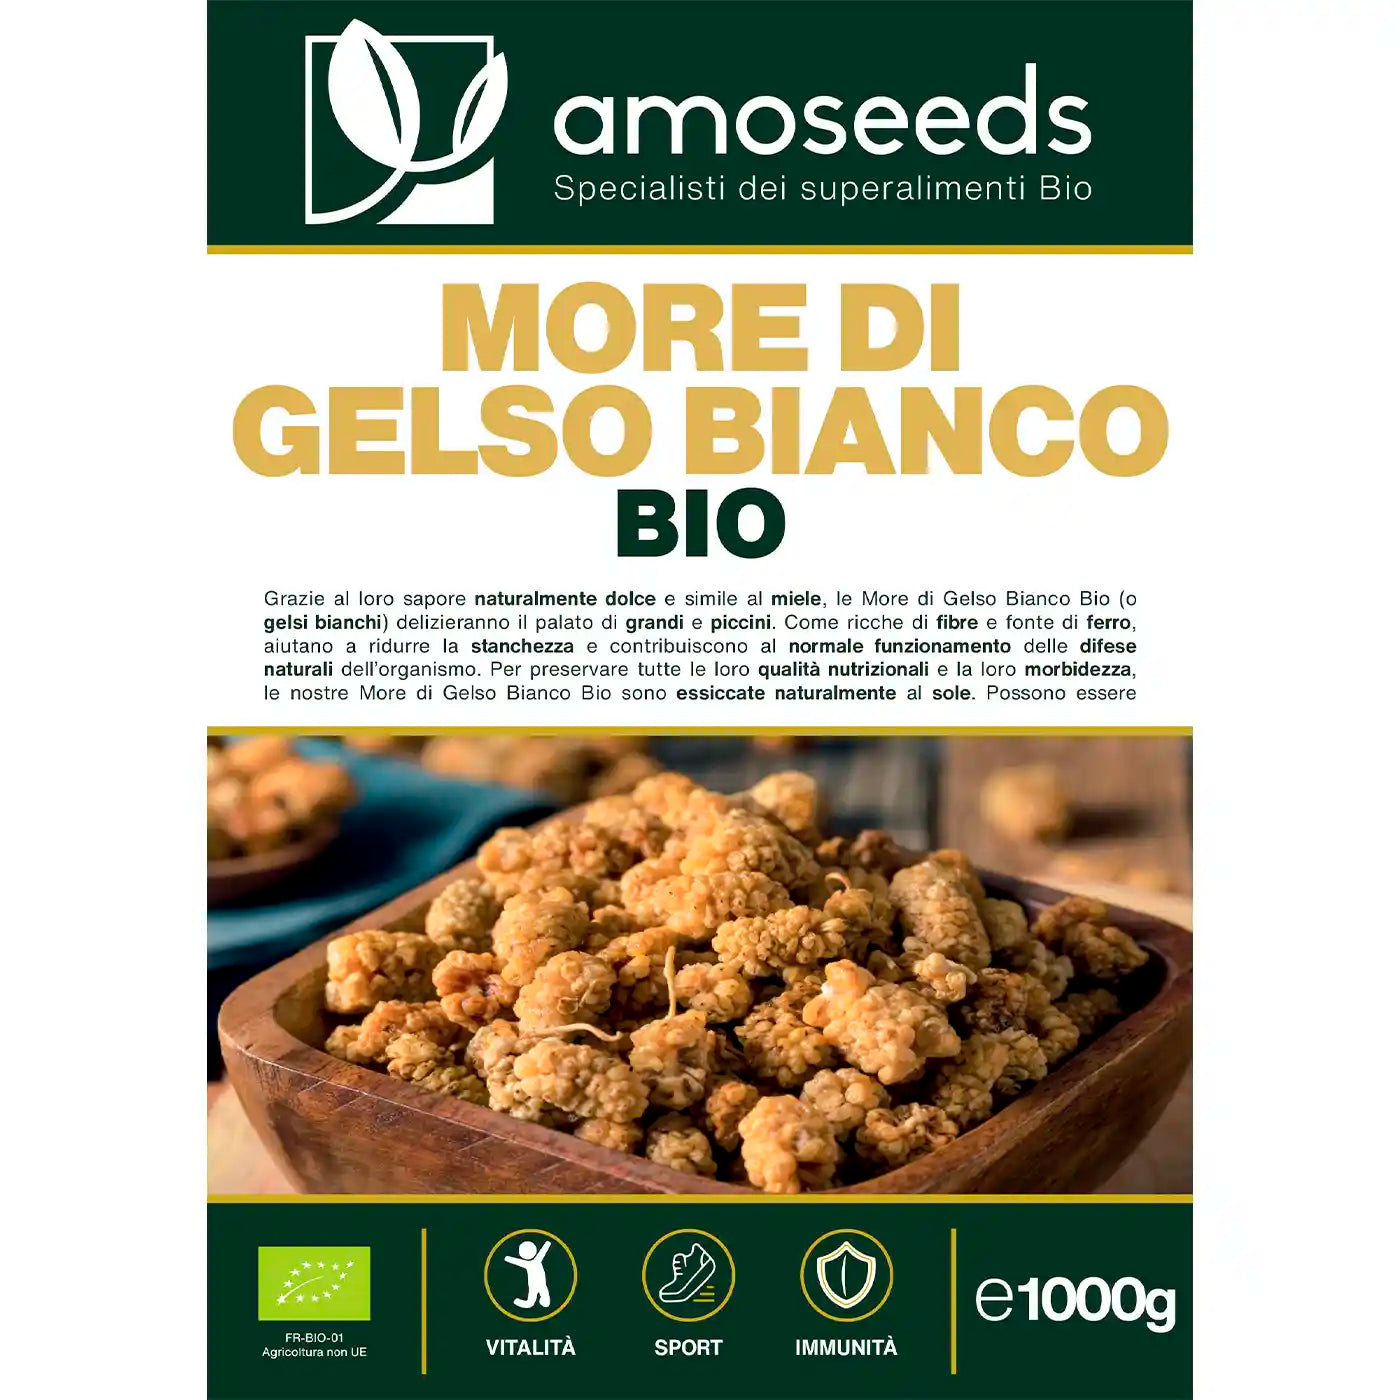 More Gelso Bianco Bio amoseeds specialisti dei superalimenti bio